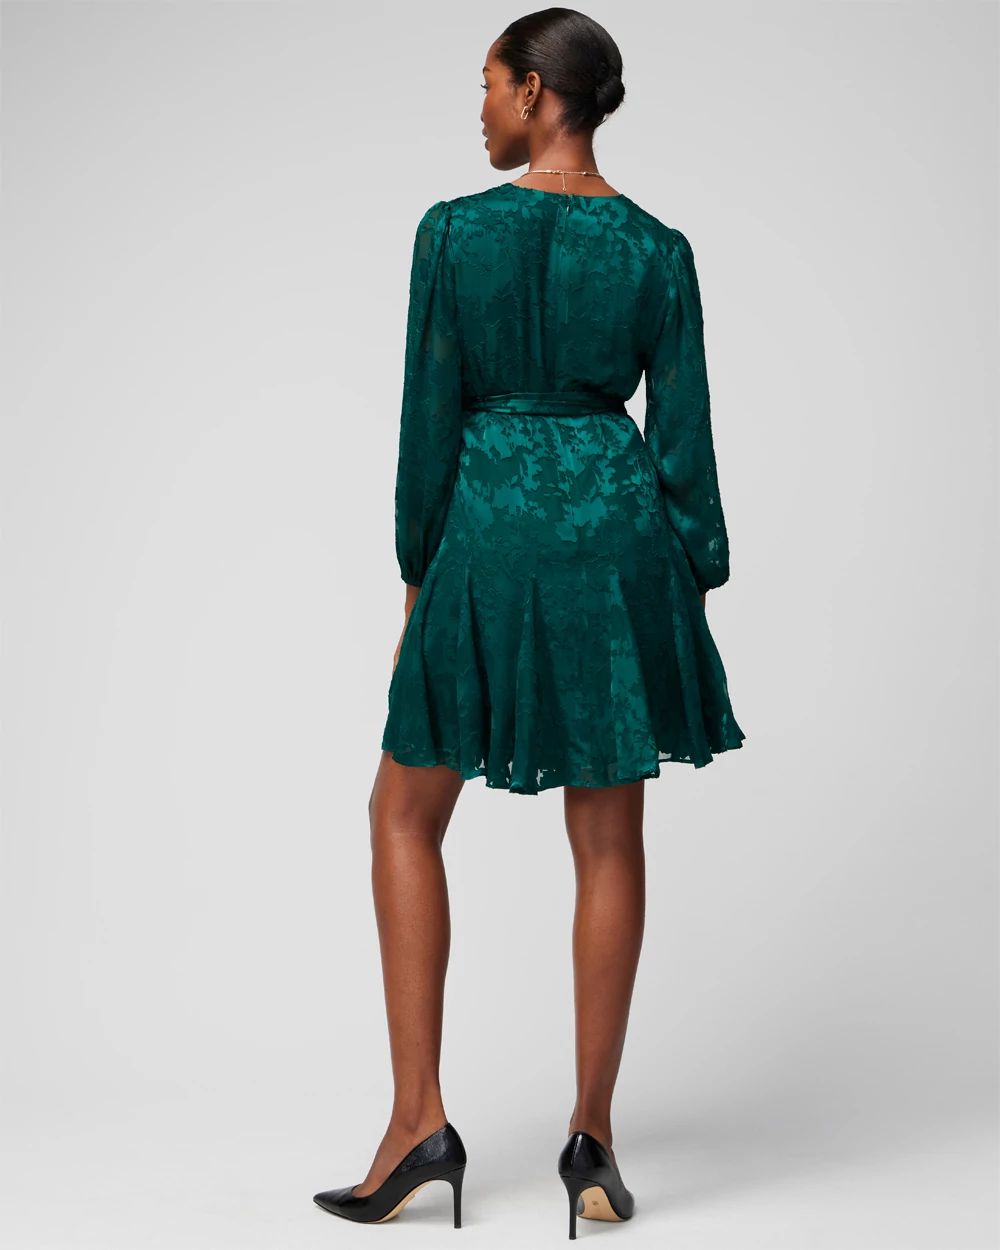 Petite Long Sleeve Burnout V-Neck Godet Dress click to view larger image.